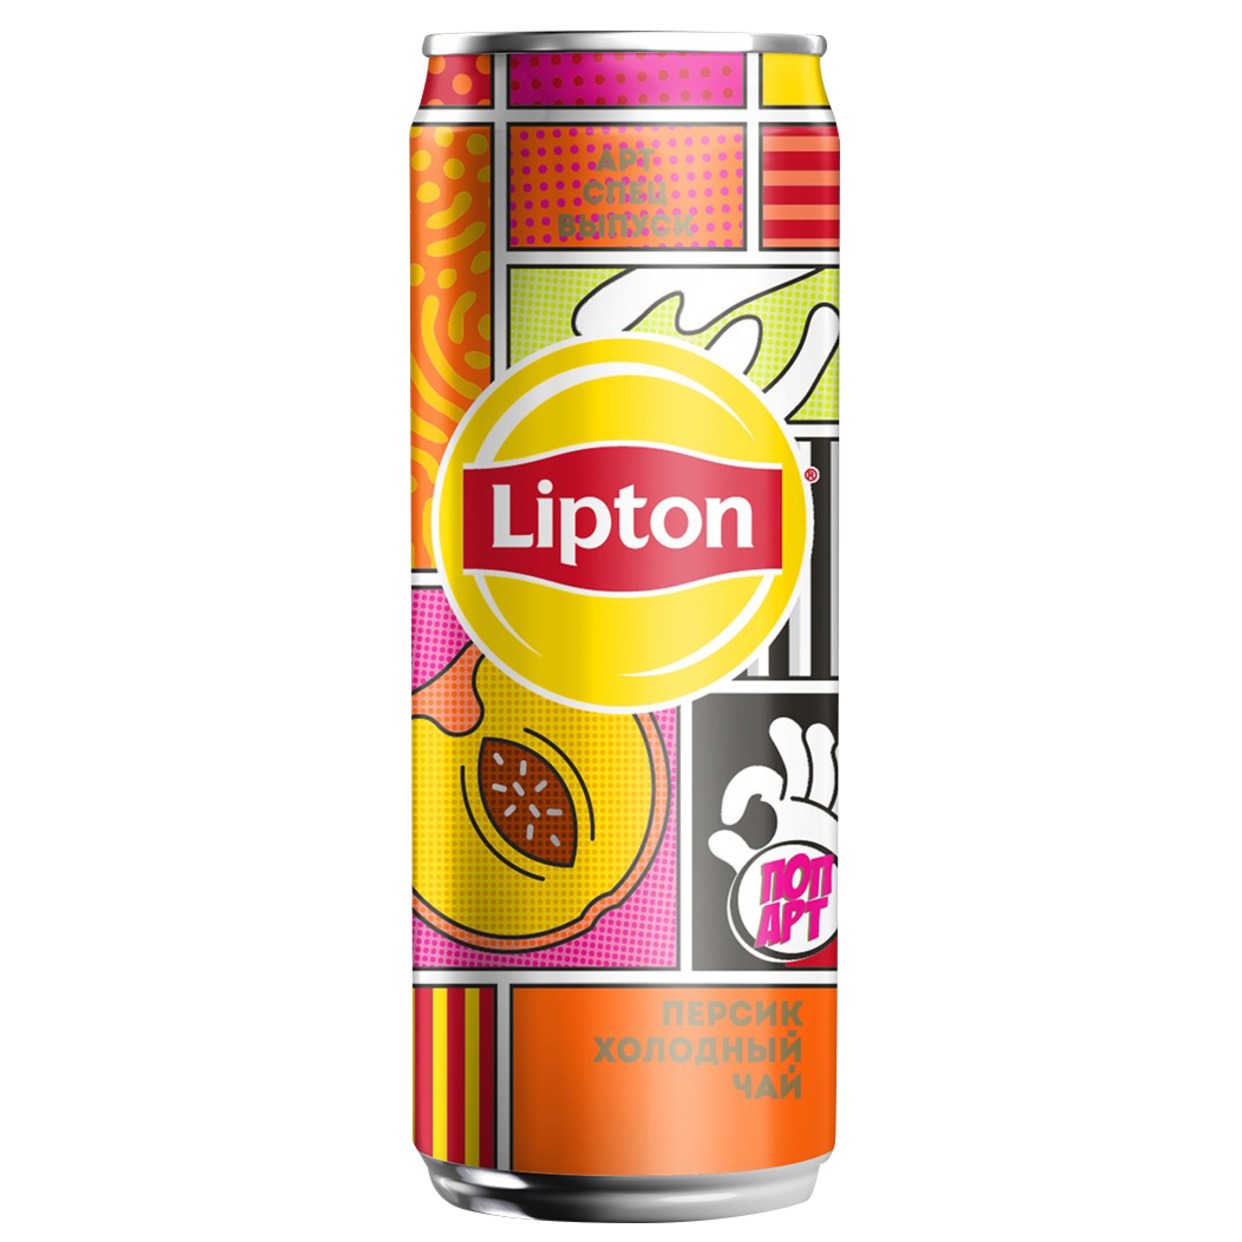 Напиток безалкогольный негазированный "Холодный чай "Липтон" со вкусом персика" 0.25л ж/б по акции в Пятерочке